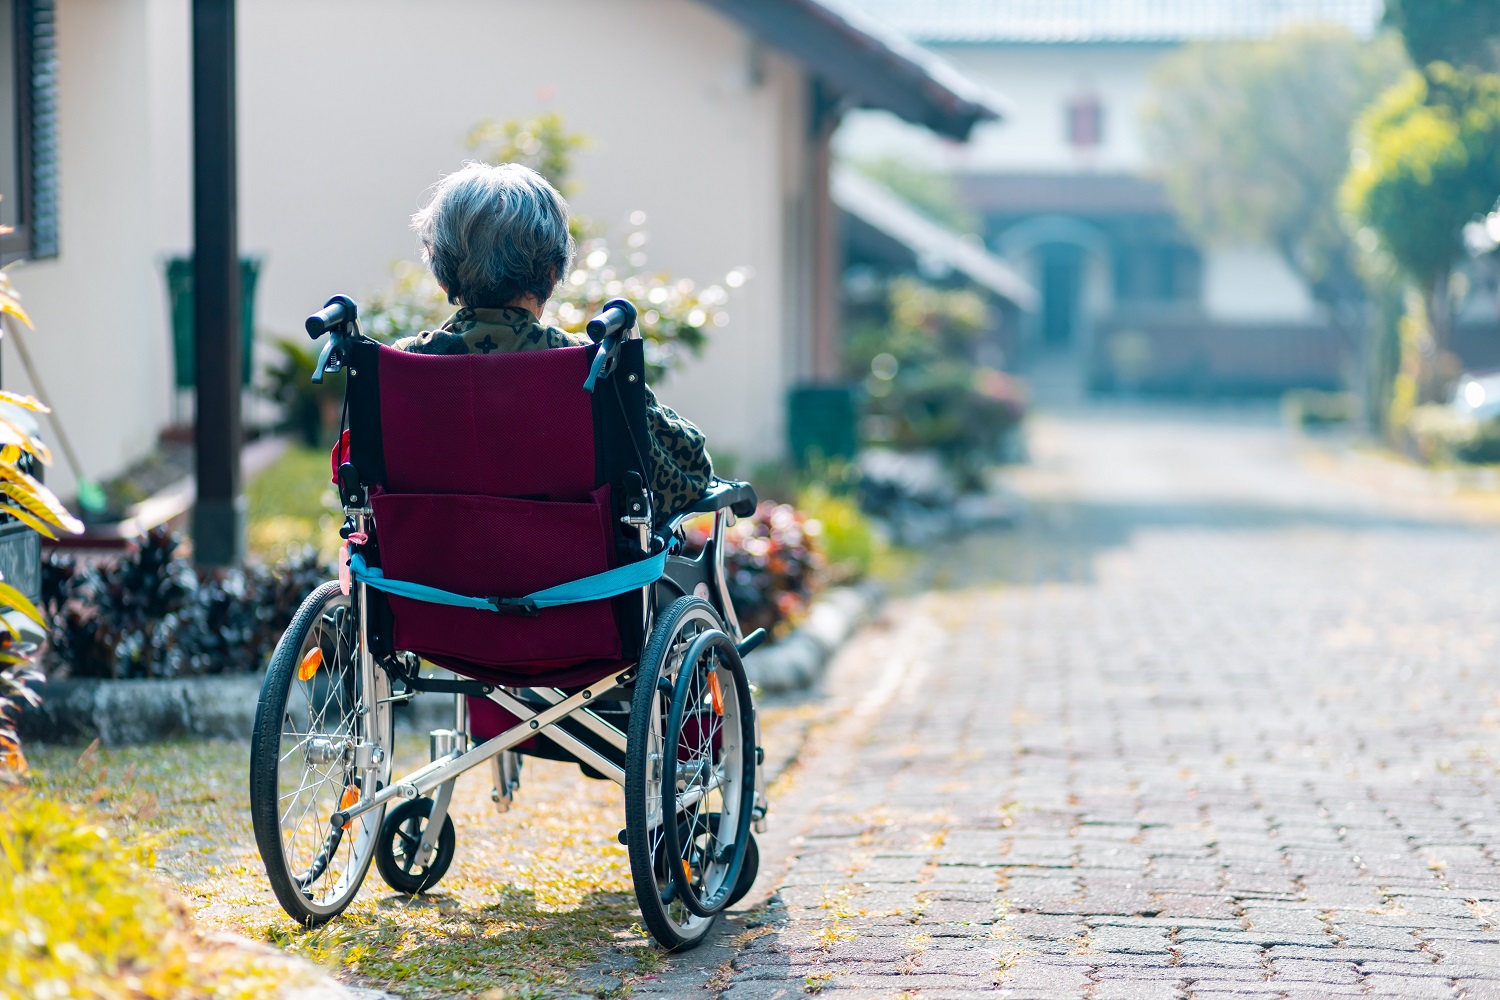 Nuo liepos 1-osios neįgaliesiems bus teikiama individuali asmeninio asistento pagalba